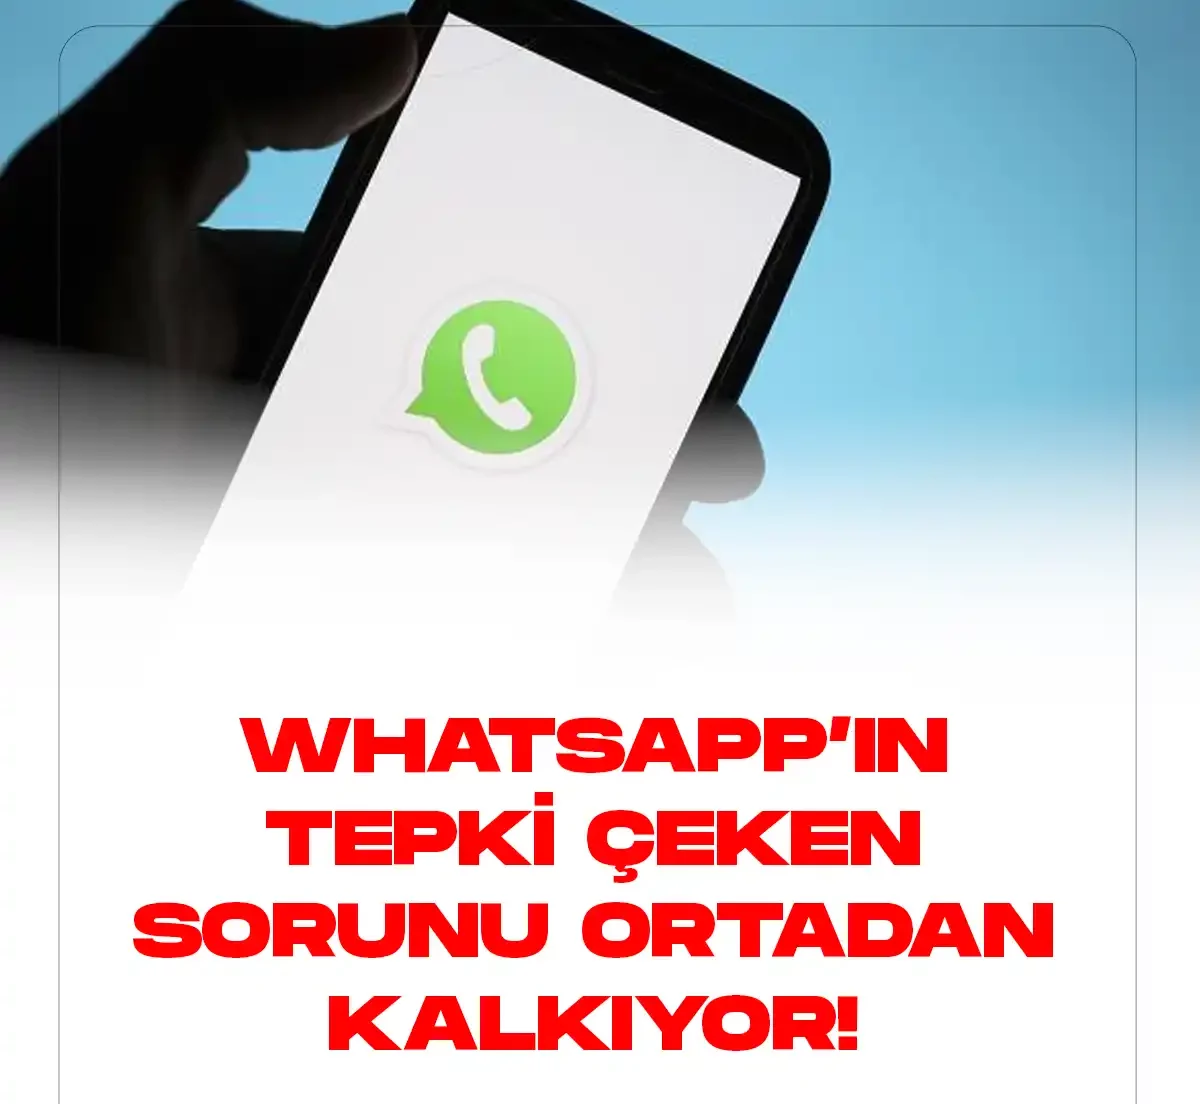 Whatsapp'ın tepki çeken sorunu ortadan kalkıyor